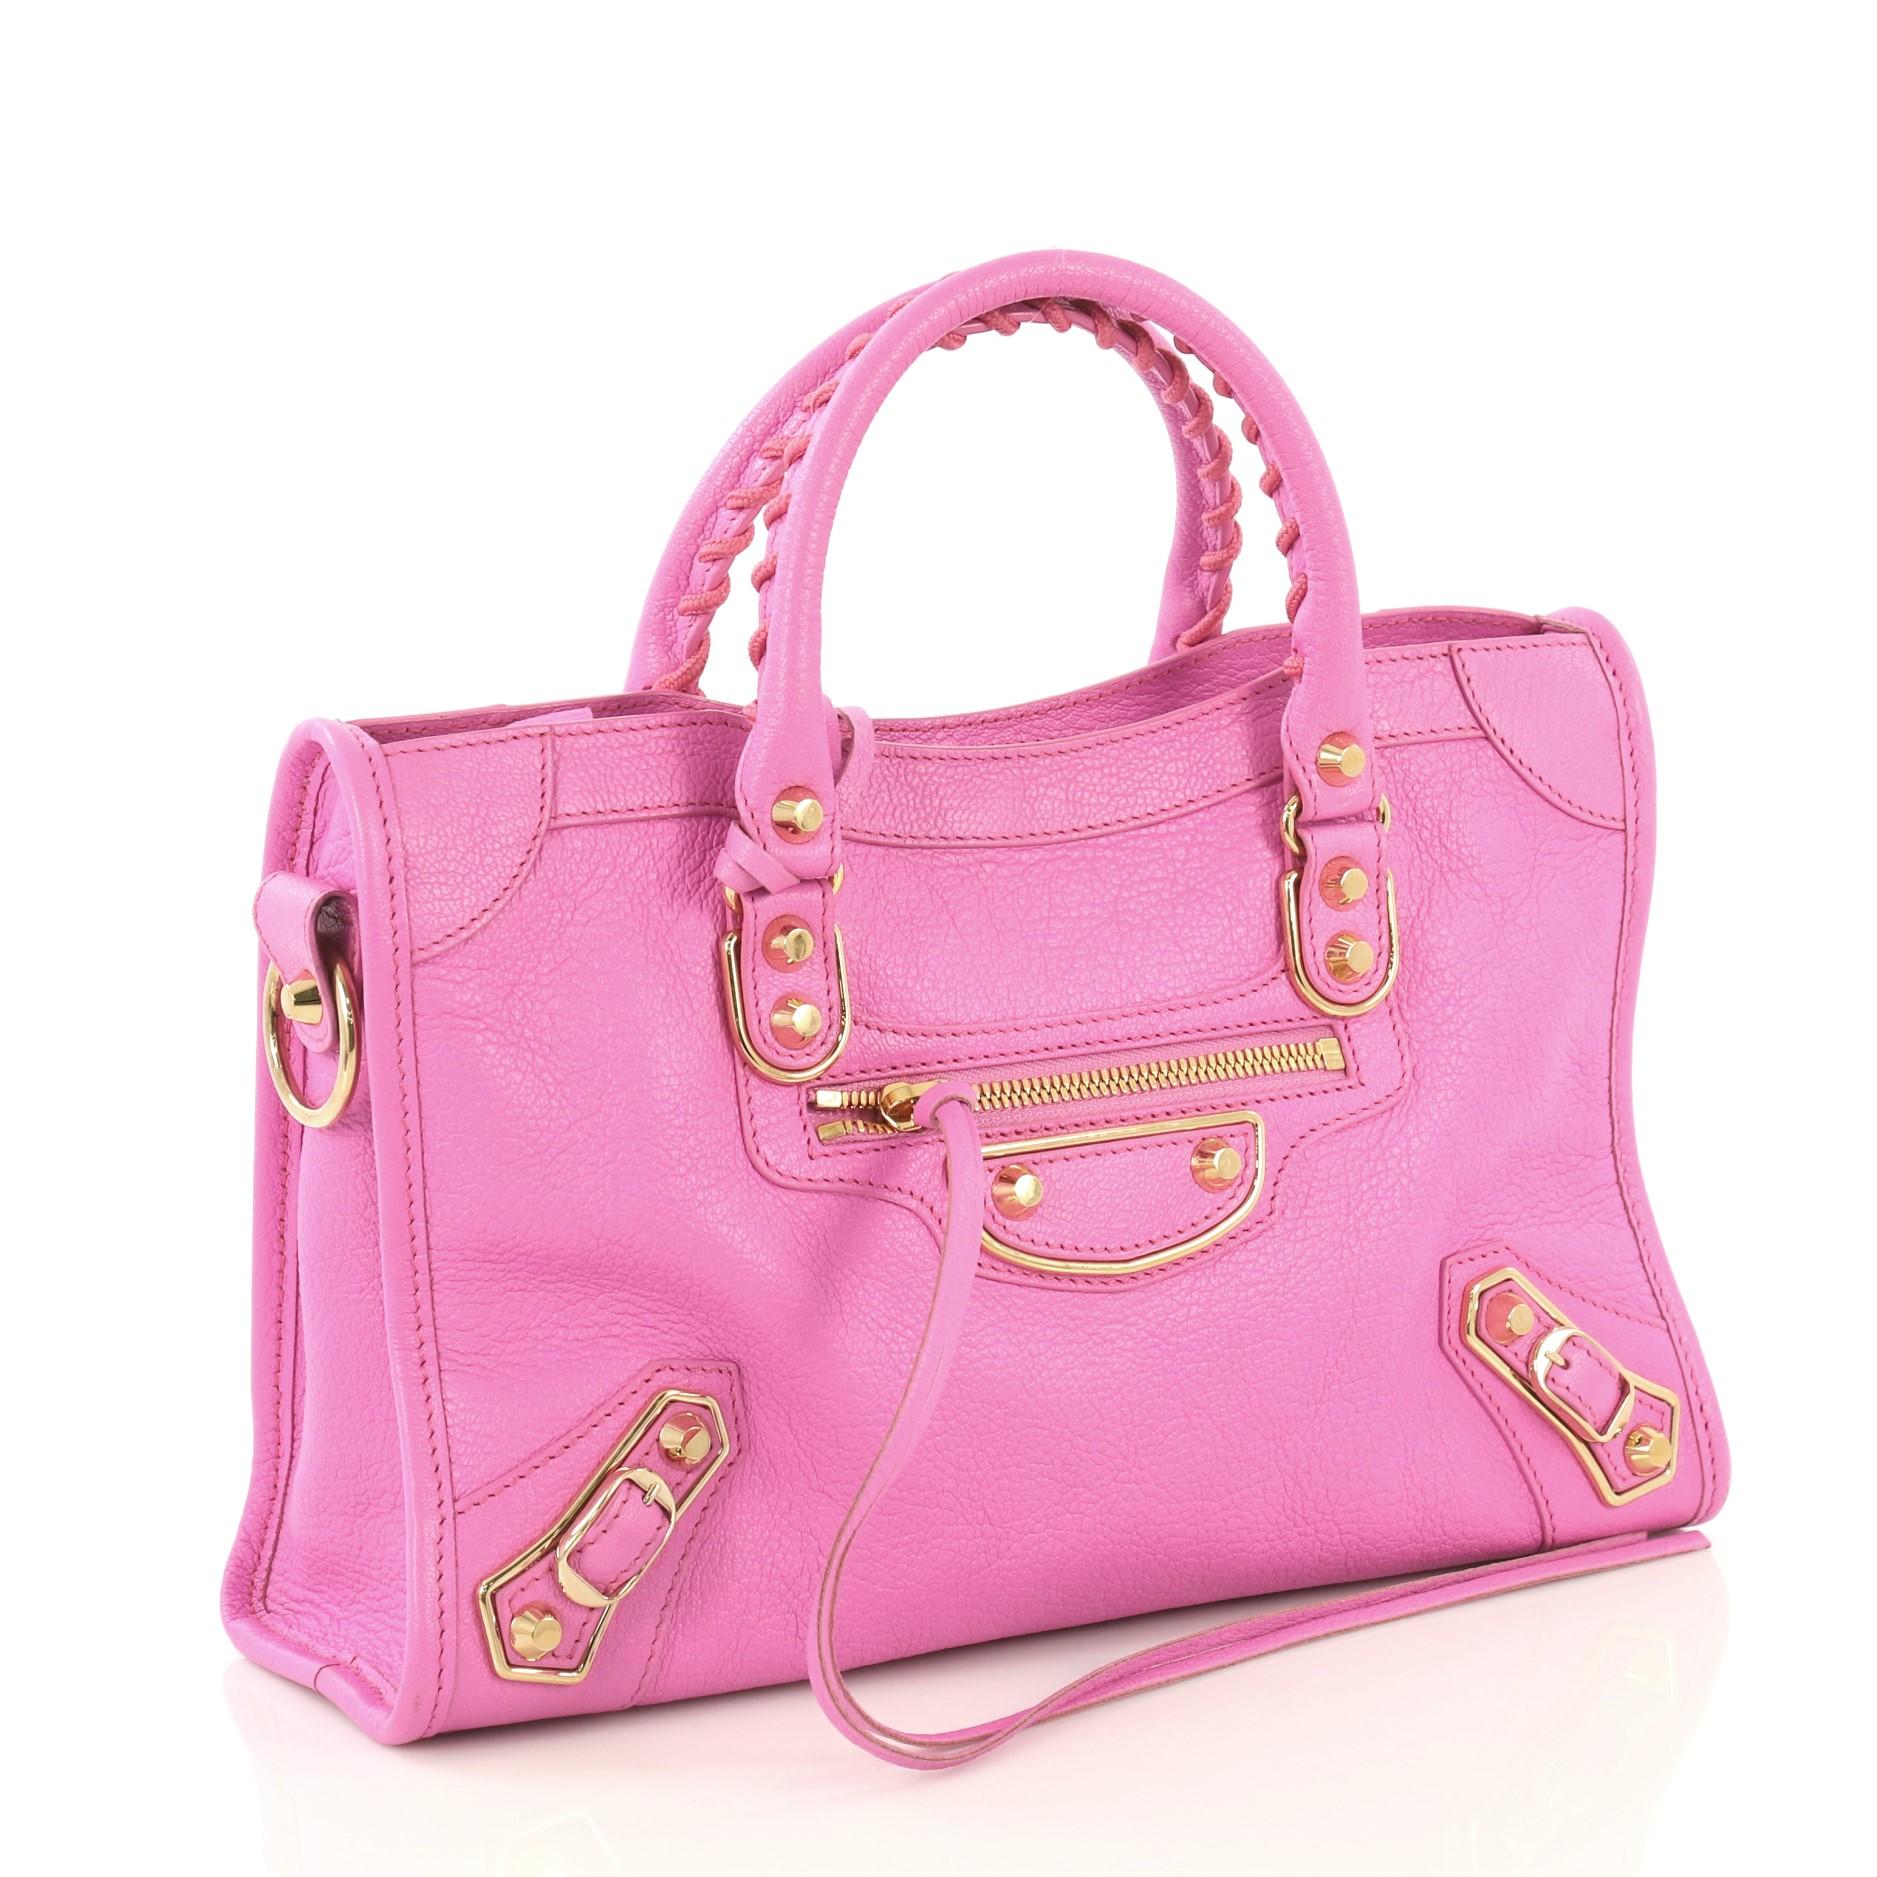 pink metallic balenciaga bag